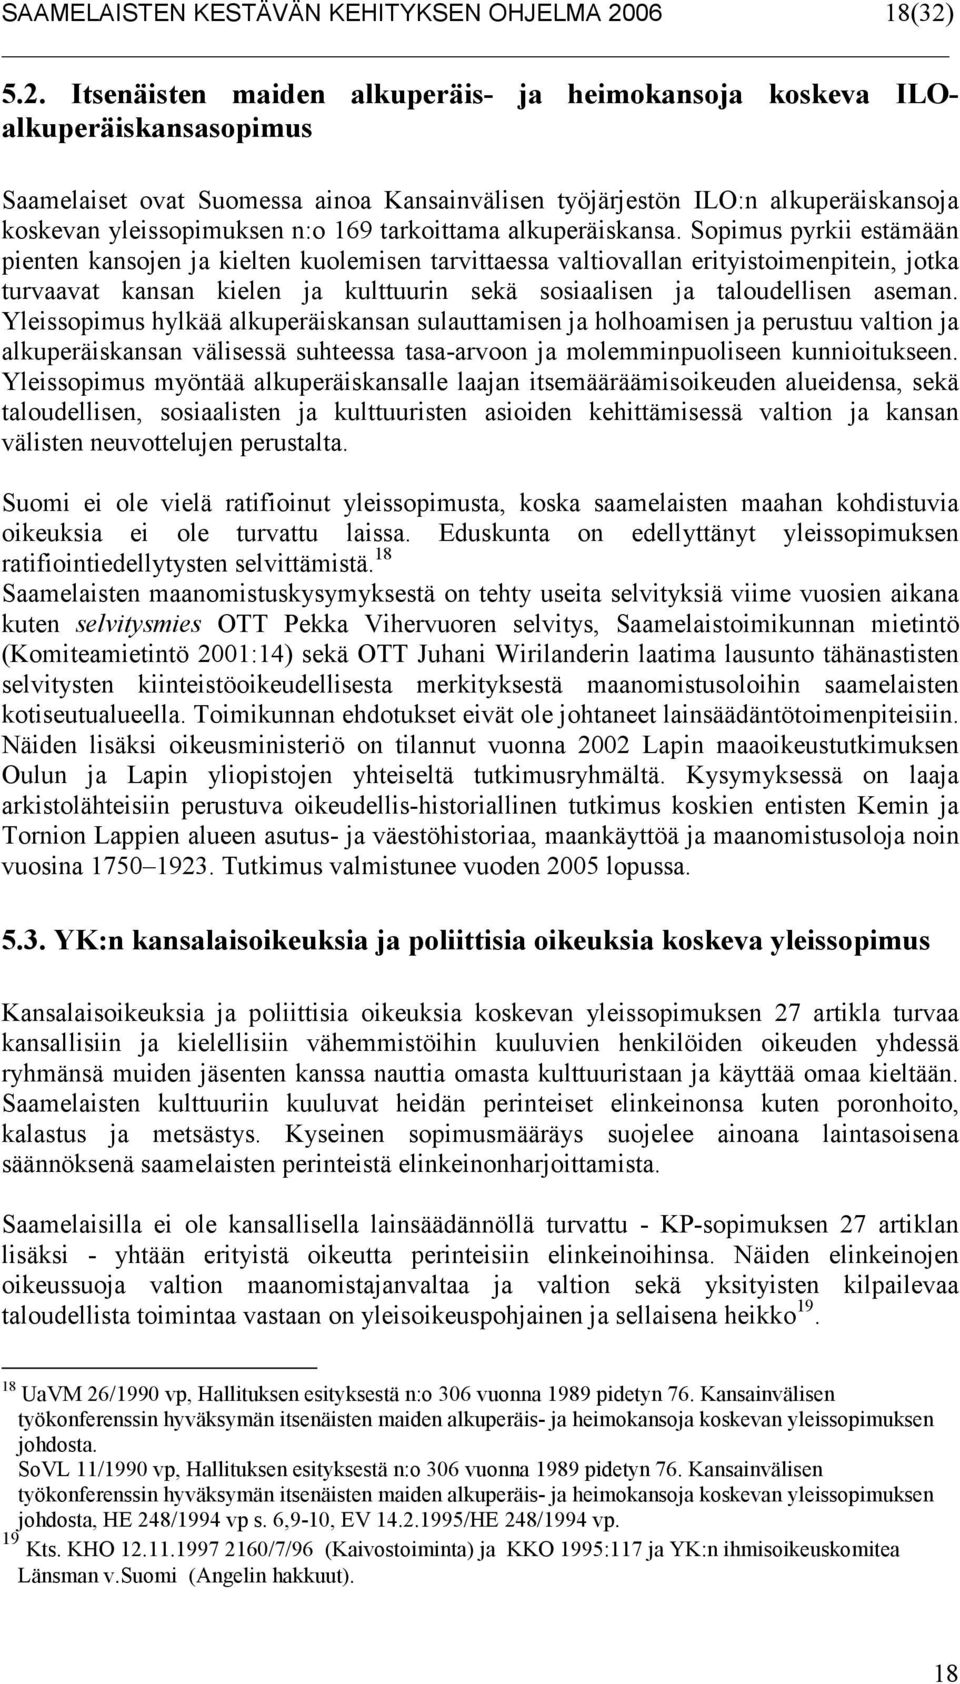 5.2. Itsenäisten maiden alkuperäis- ja heimokansoja koskeva ILOalkuperäiskansasopimus Saamelaiset ovat Suomessa ainoa Kansainvälisen työjärjestön ILO:n alkuperäiskansoja koskevan yleissopimuksen n:o